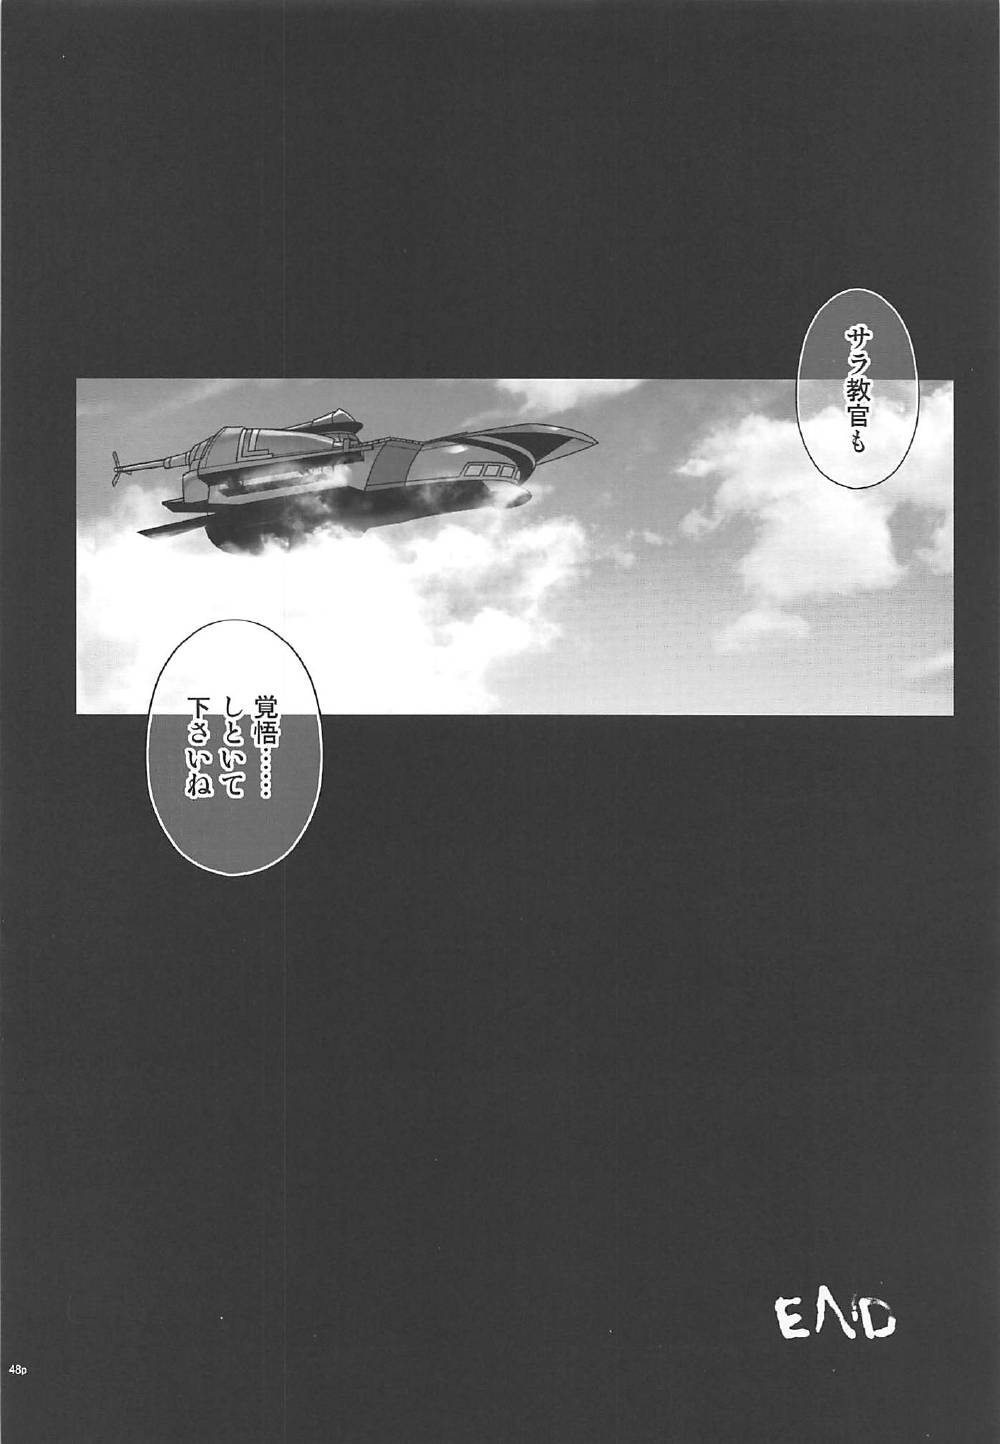 (C92) [サイクロン (和泉、冷泉)] T-29 SenJoTeki (英雄伝説 閃の軌跡II)